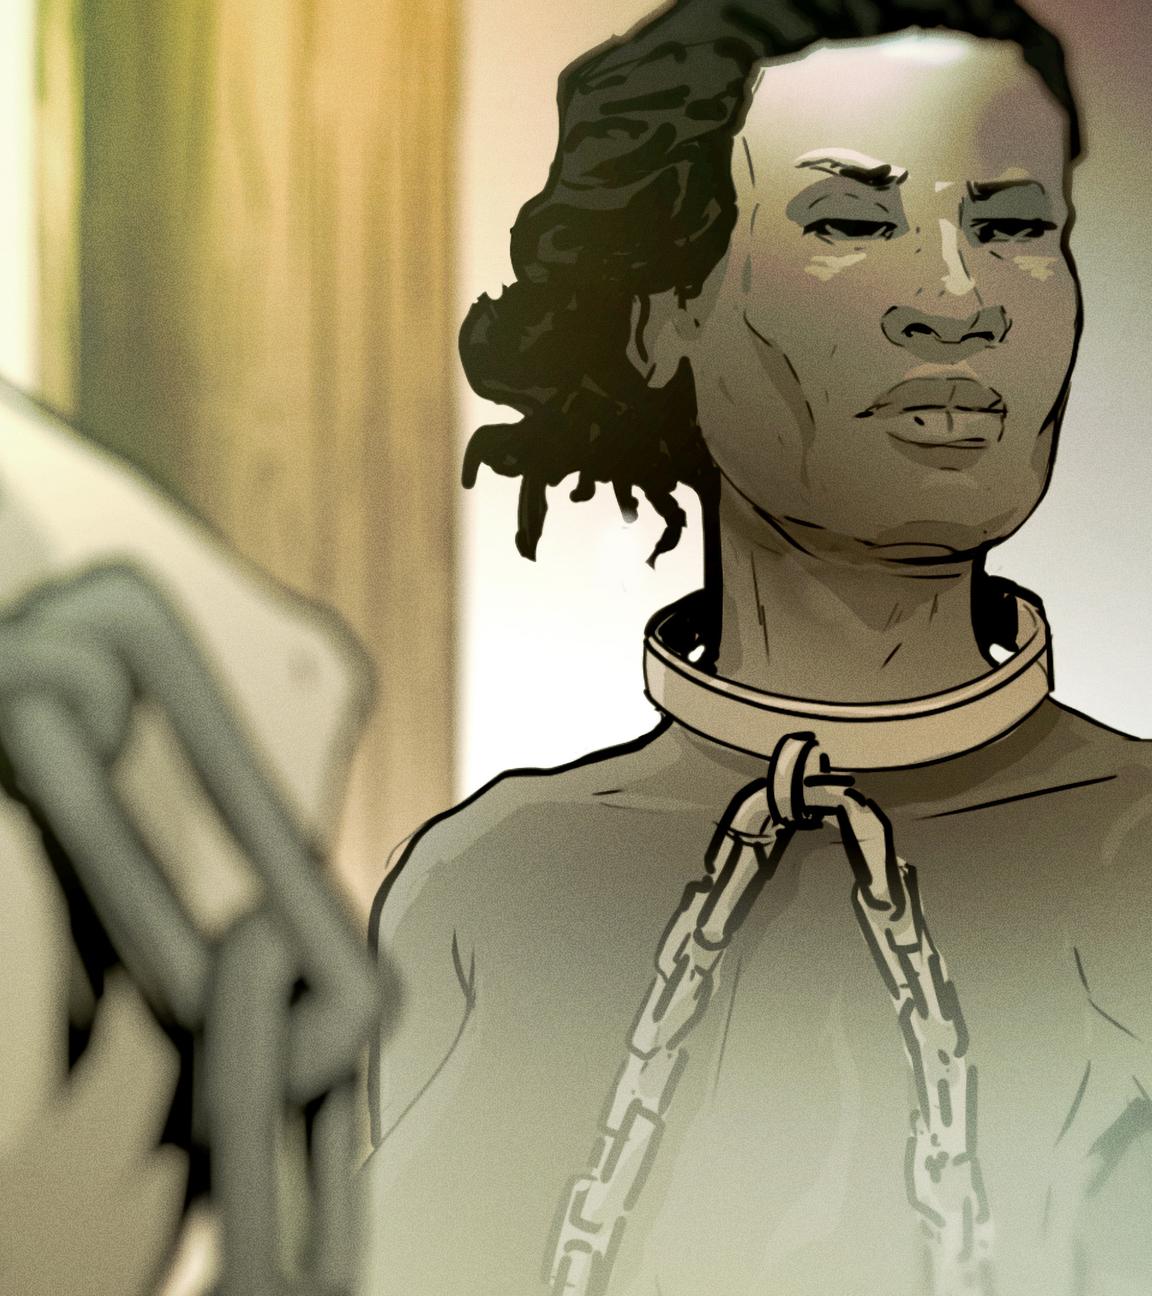 Graphic-Novel-Darstellung: Eine schwarze Frau hat eine Fessel um den Hals. Sie sieht zur Seite. Die Fessel wird von einer weißen, bedrohlich wirkenden Faust gehalten.